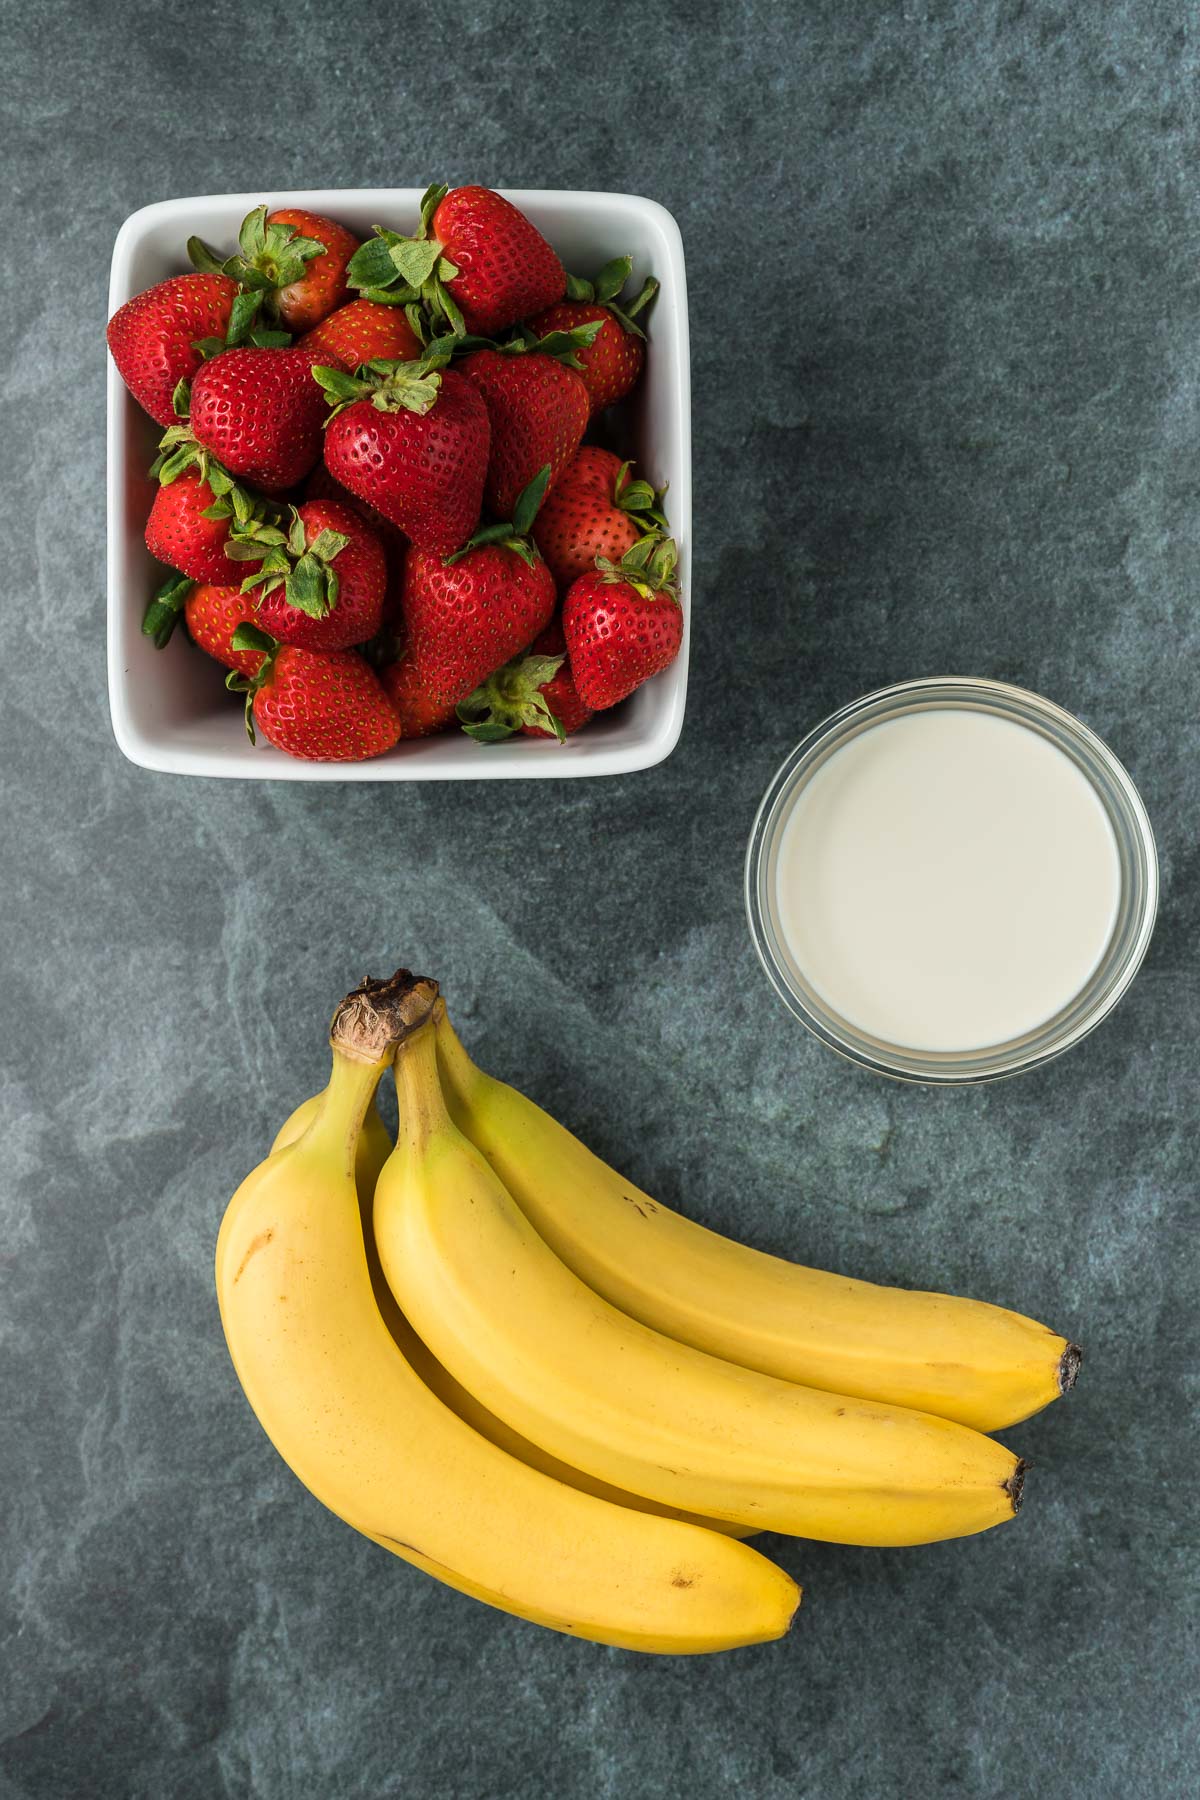 Punnett of strawberries, 3 bananas and oat milk on a dark background